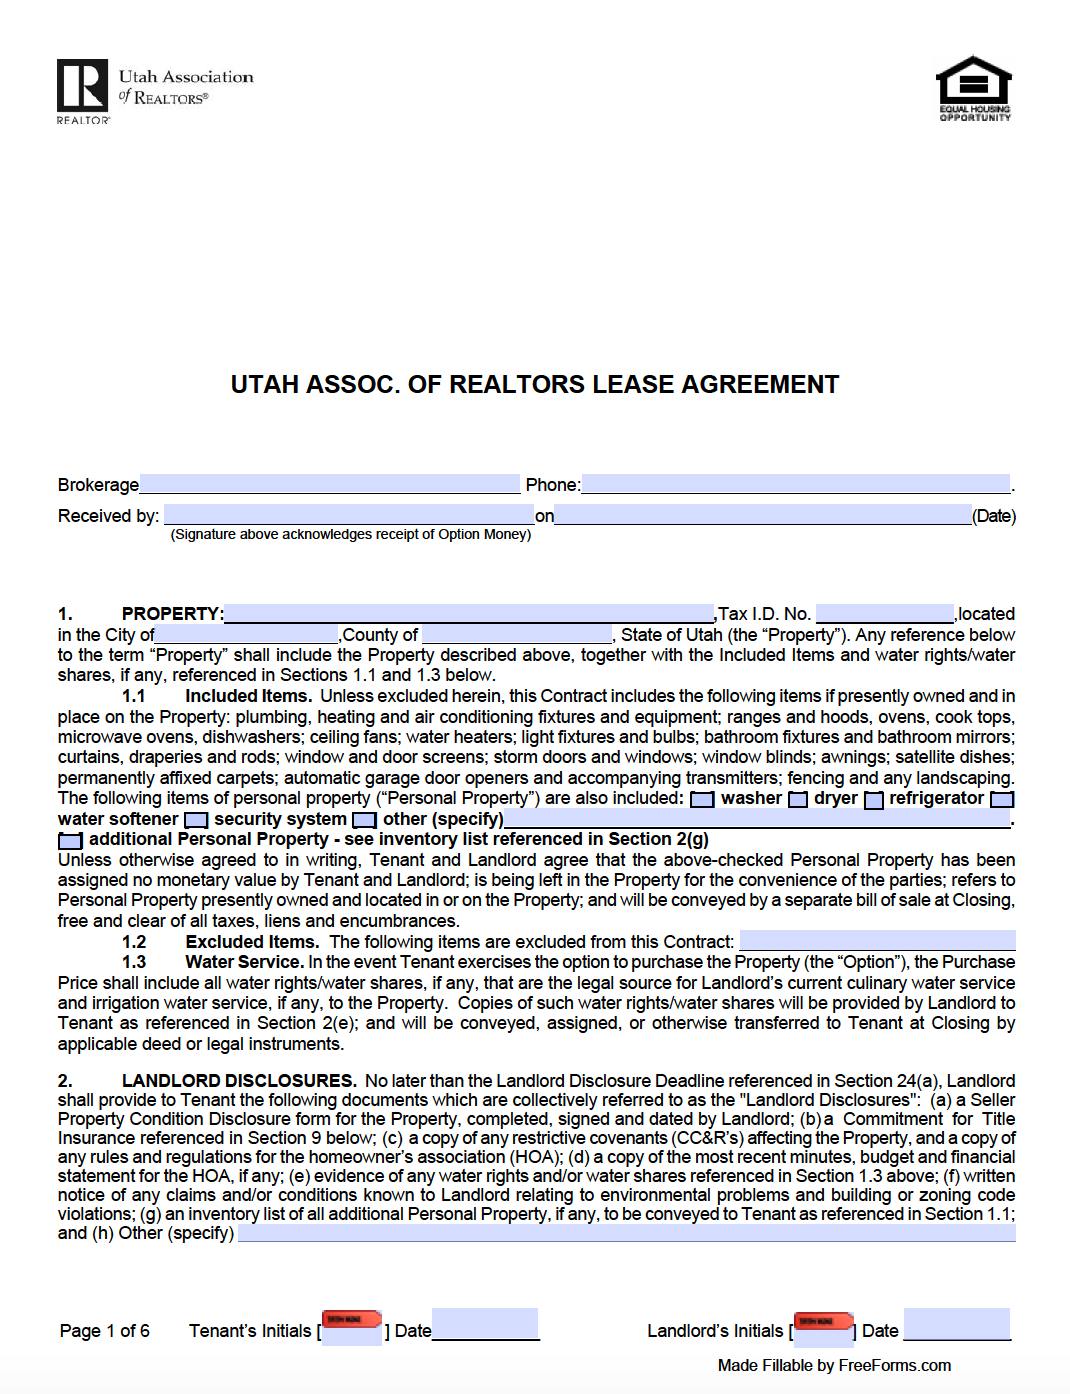 Free Utah Standard Residential Lease Agreement Template PDF WORD